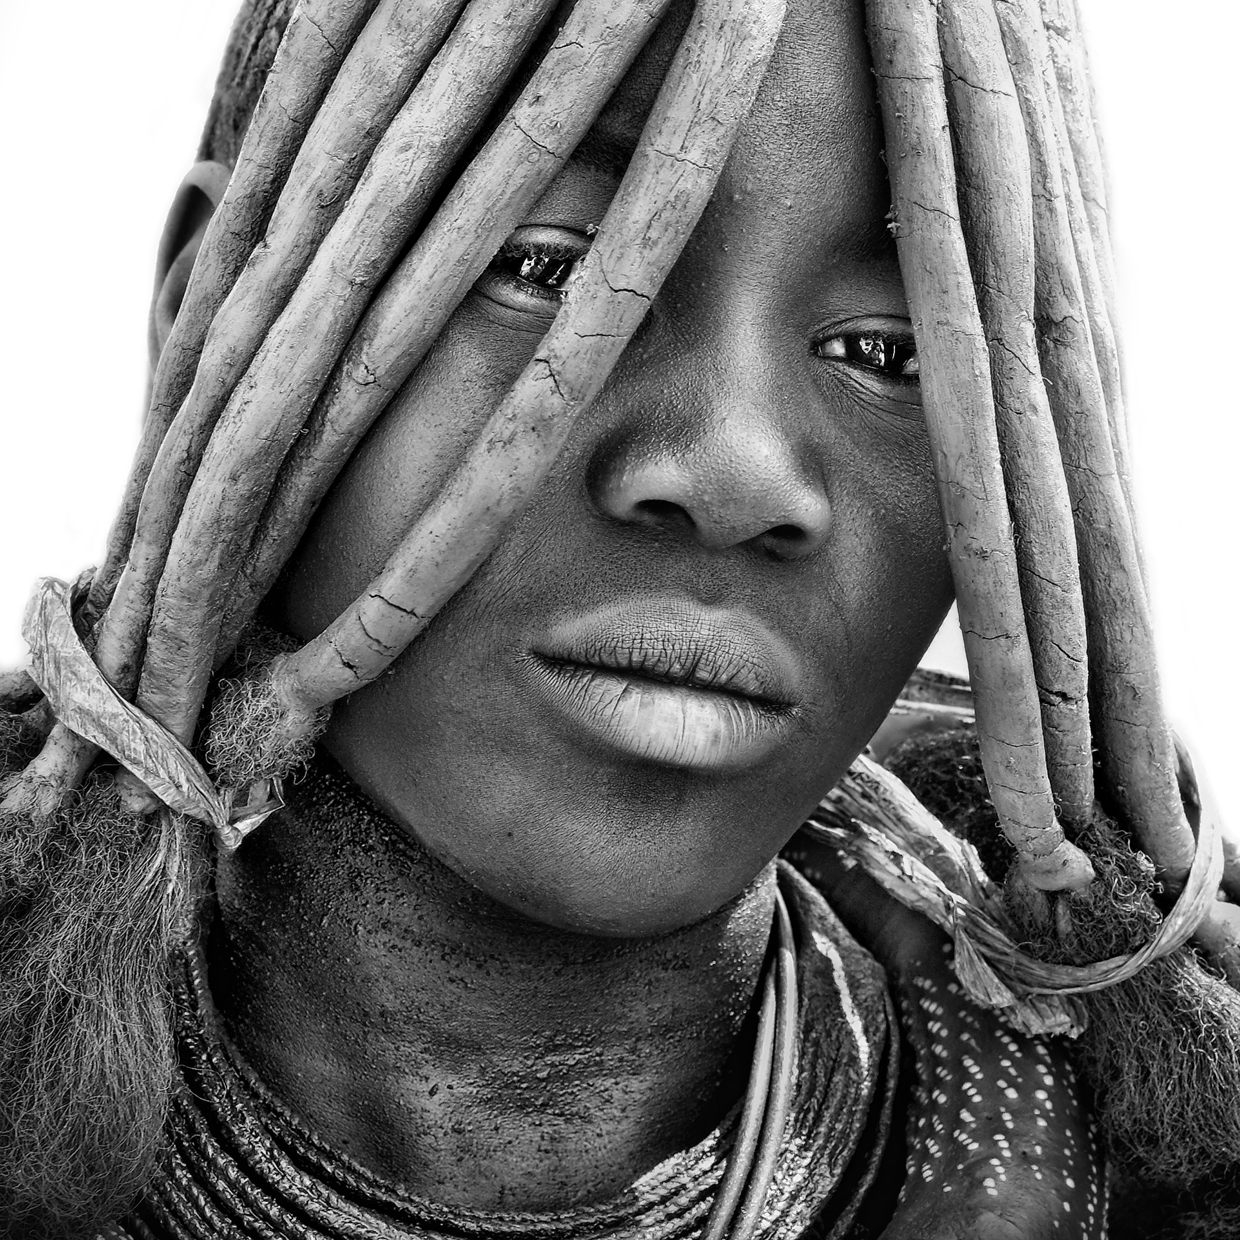 Tribe himba black. Химба Намибия. Племя Химба. Племя Химба в Африке. Химба портрет.